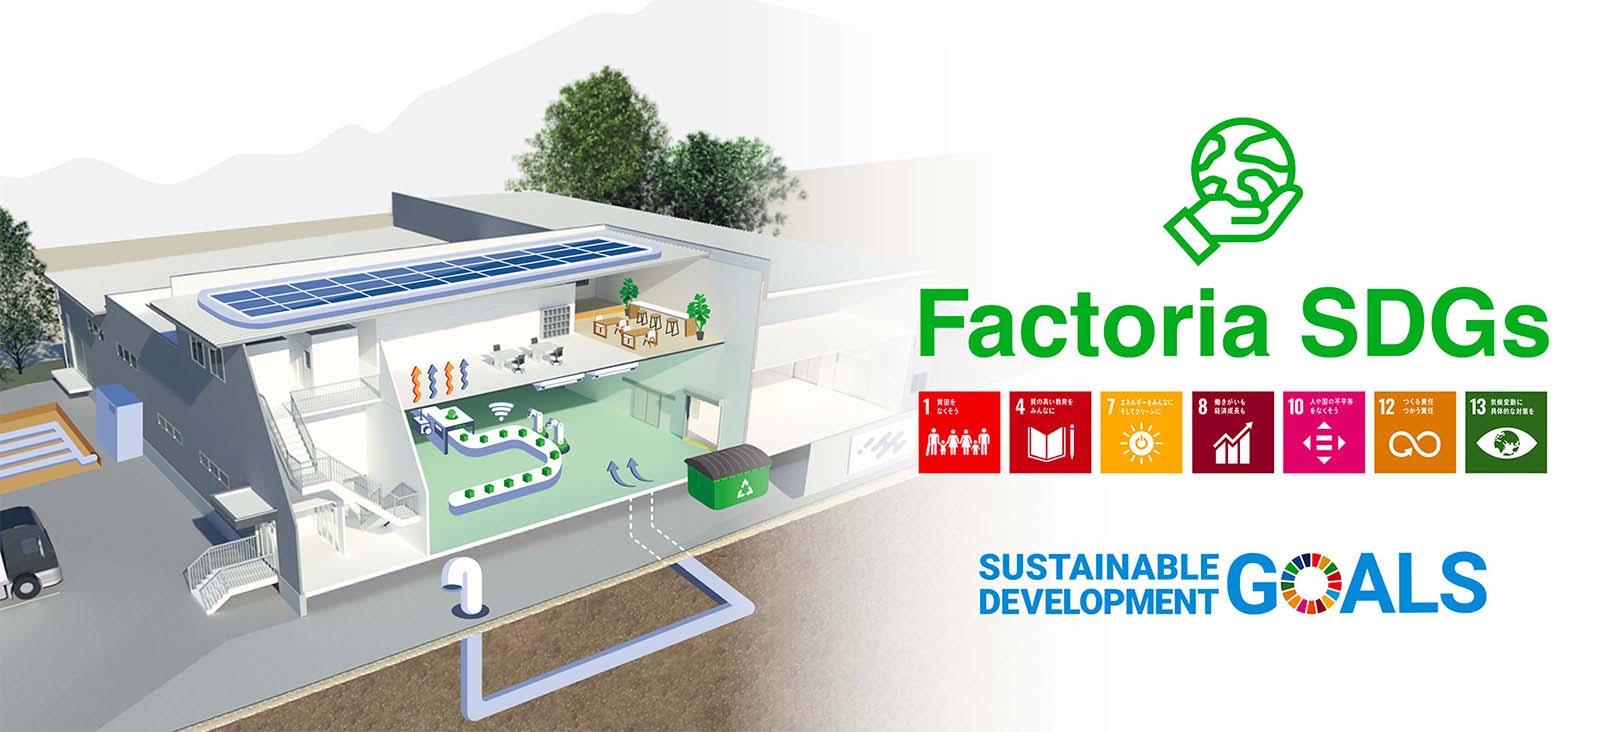 ファクトリア（Factoria）は工場建設を通じて、お客様が社会的課題を解決し、持続可能な社会づくりと地球の未来に貢献